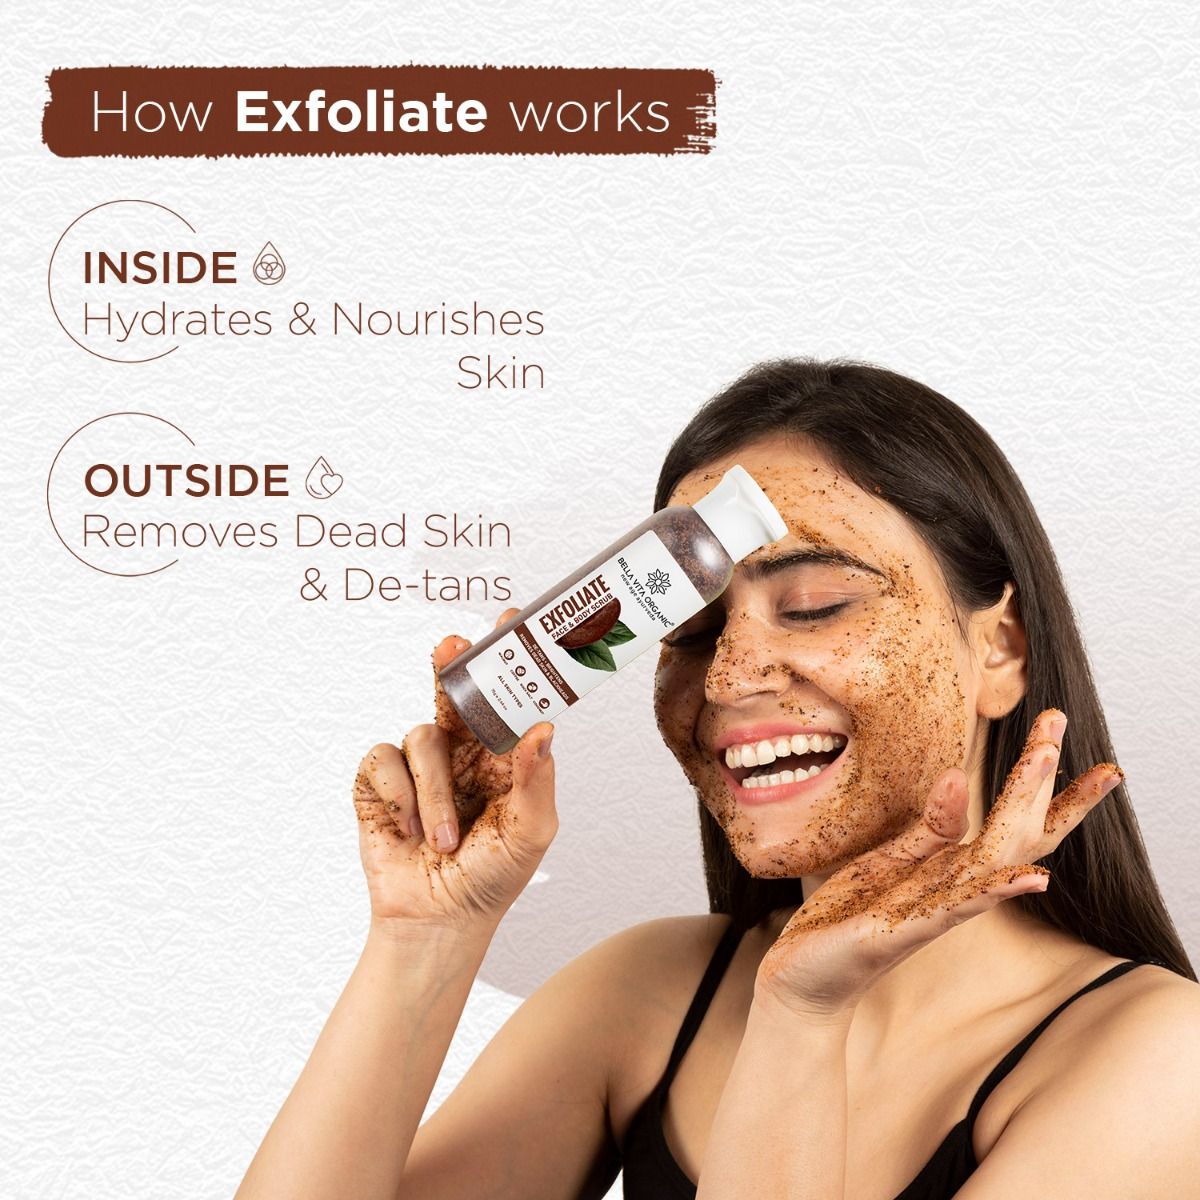 Bella Vita Organic Exfoliate Face & Body Scrub, 75 gm, Pack of 1 